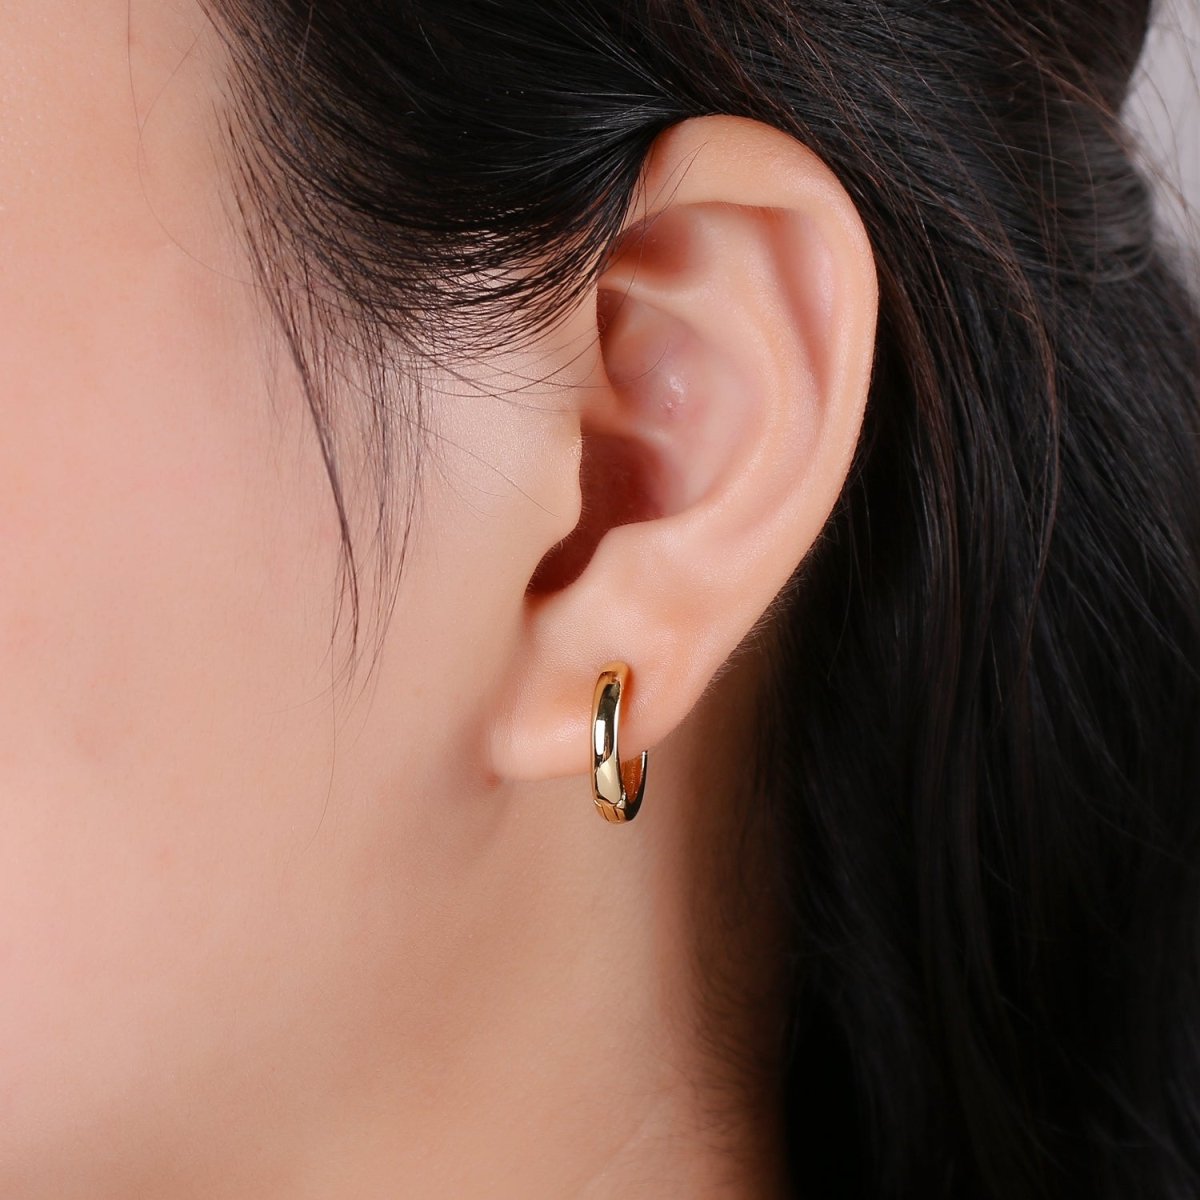 Dainty Hoop earrings 14k Gold Filled Hoop Earring 15mm Huggie Earring for Everyday Wear Hypoallergenic Jewelry Q-225 Q-226 T-278 - DLUXCA